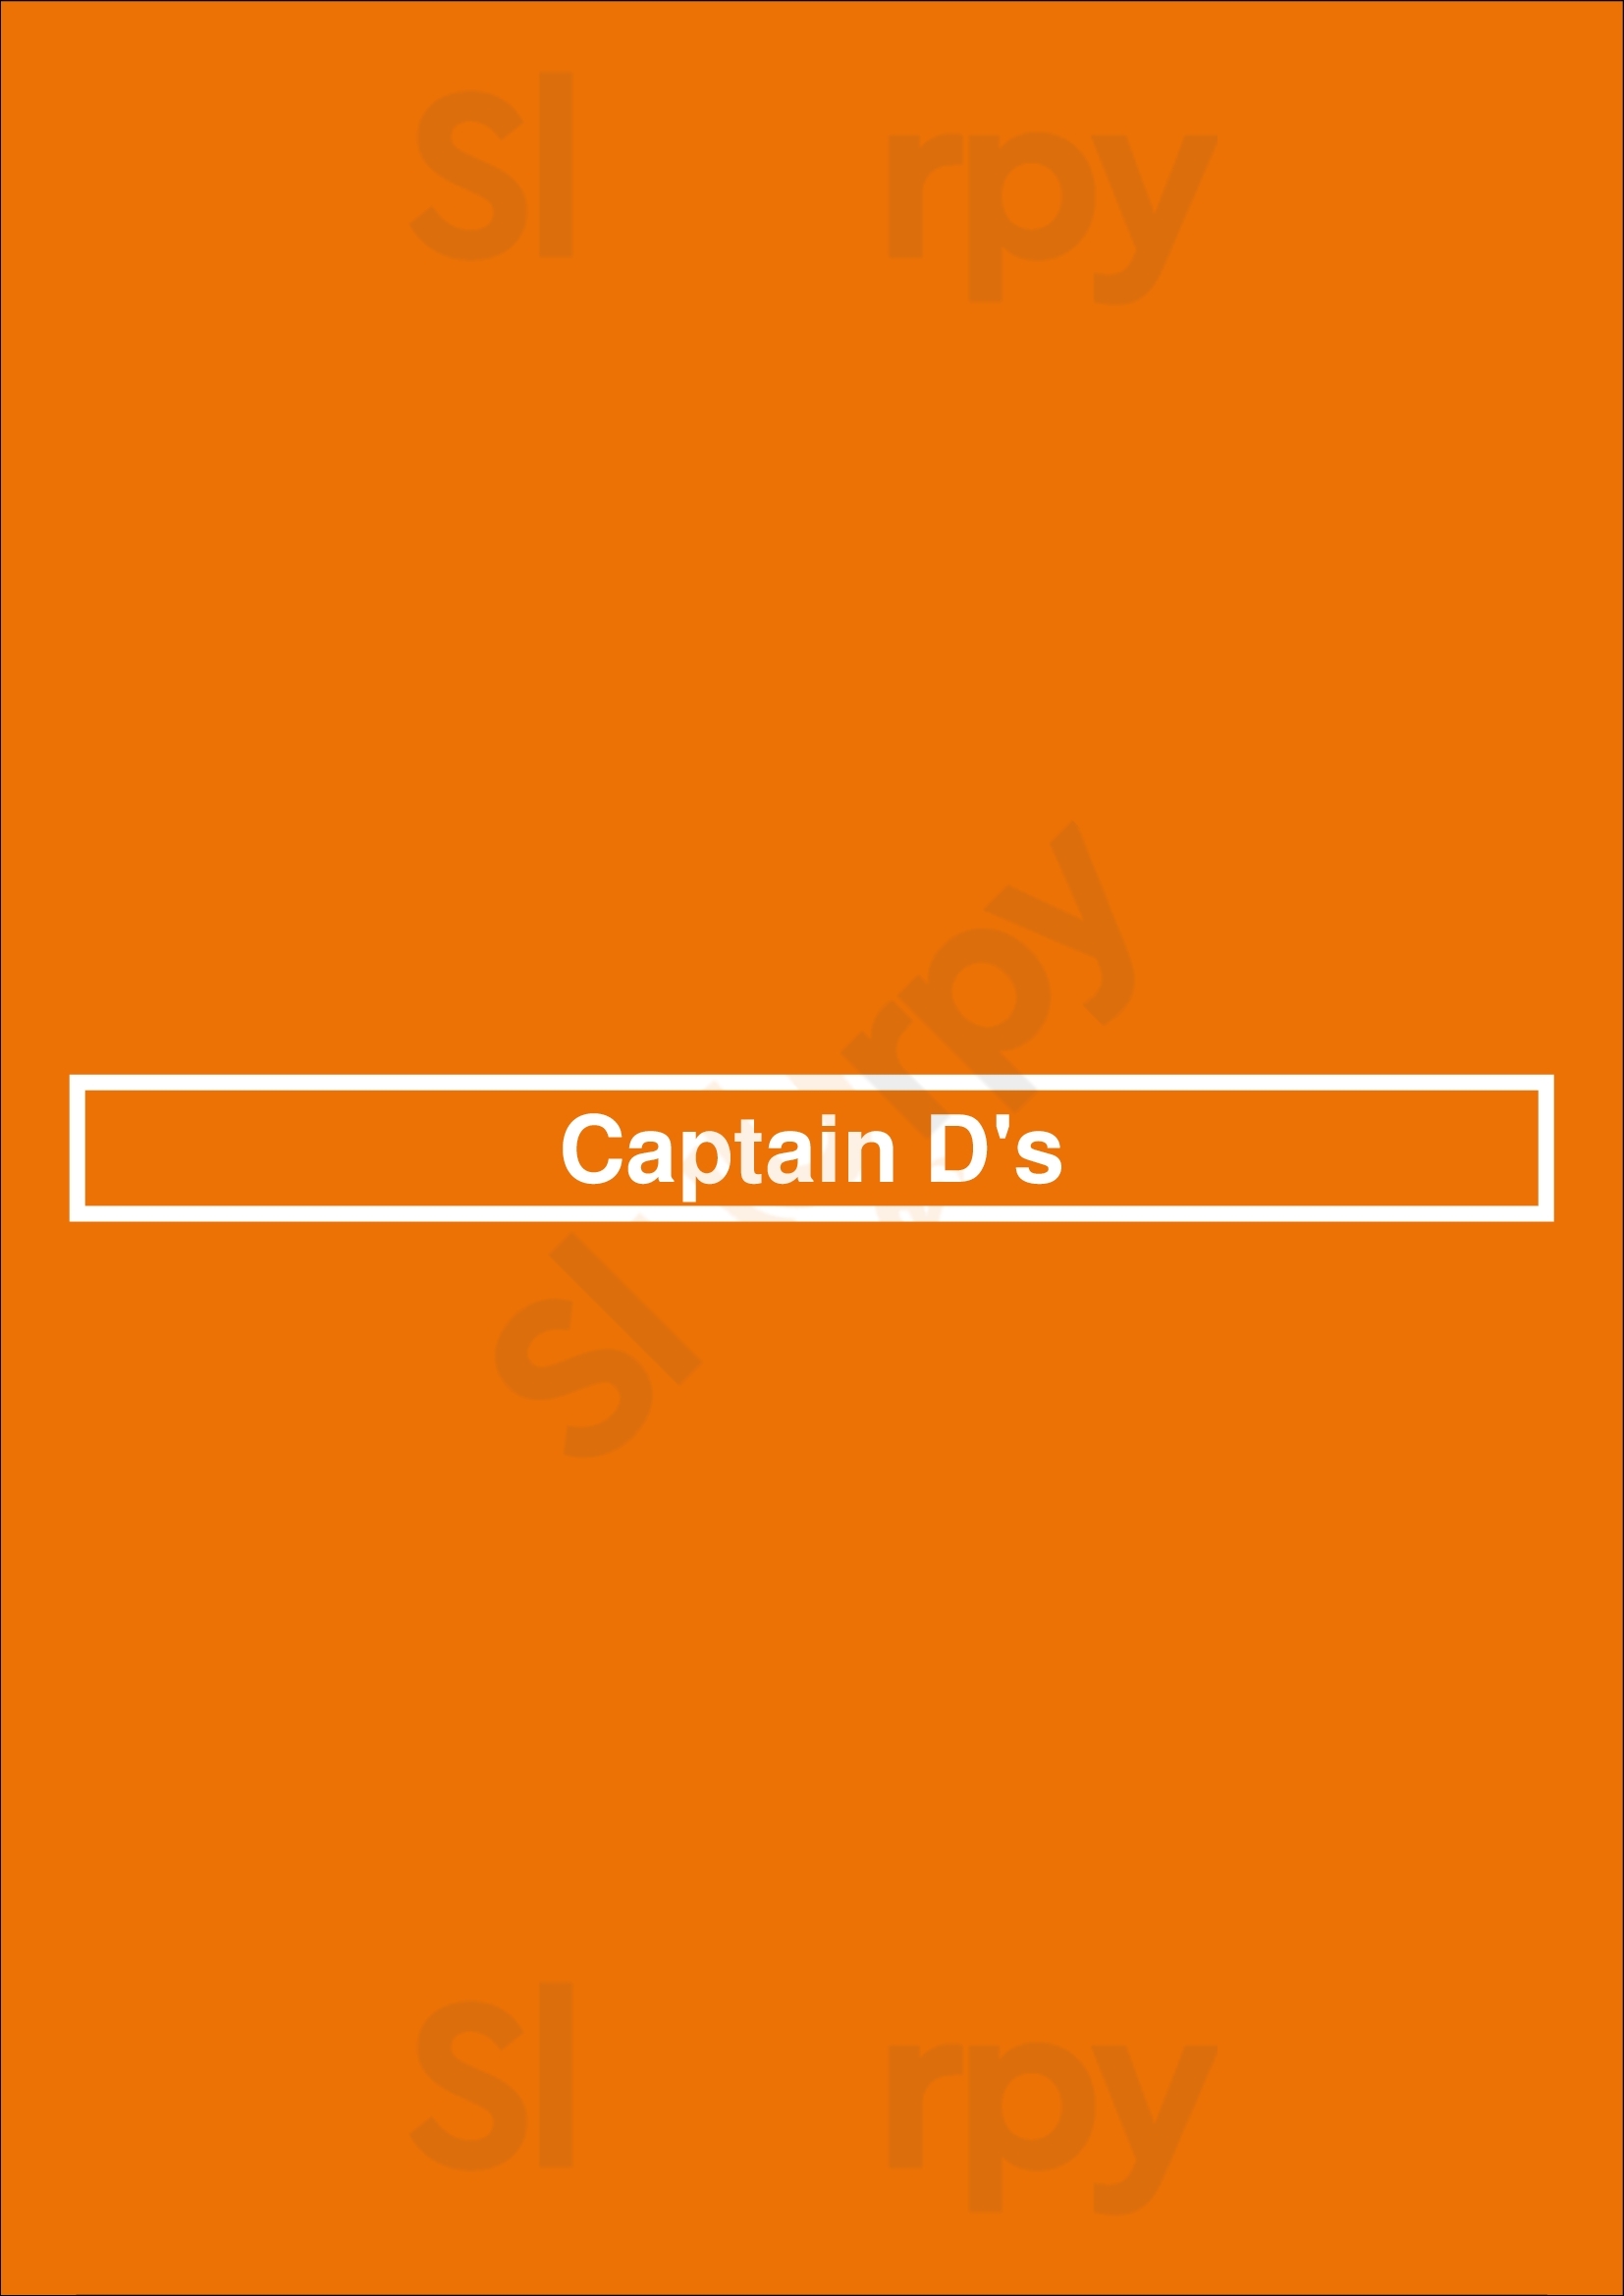 Captain D's Dallas Menu - 1